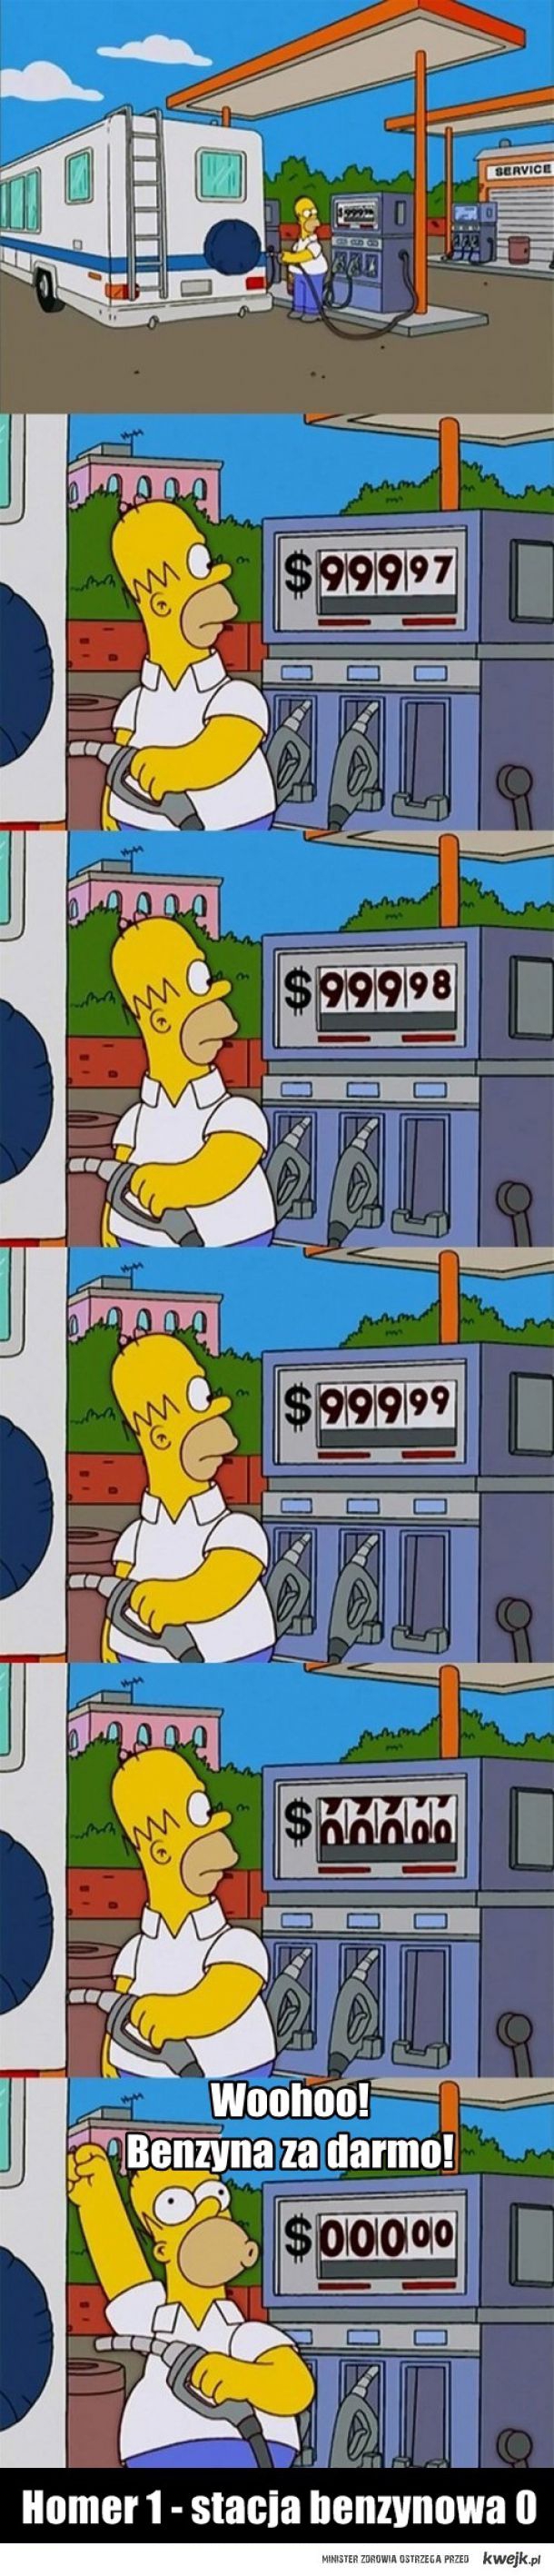 Logika Homera